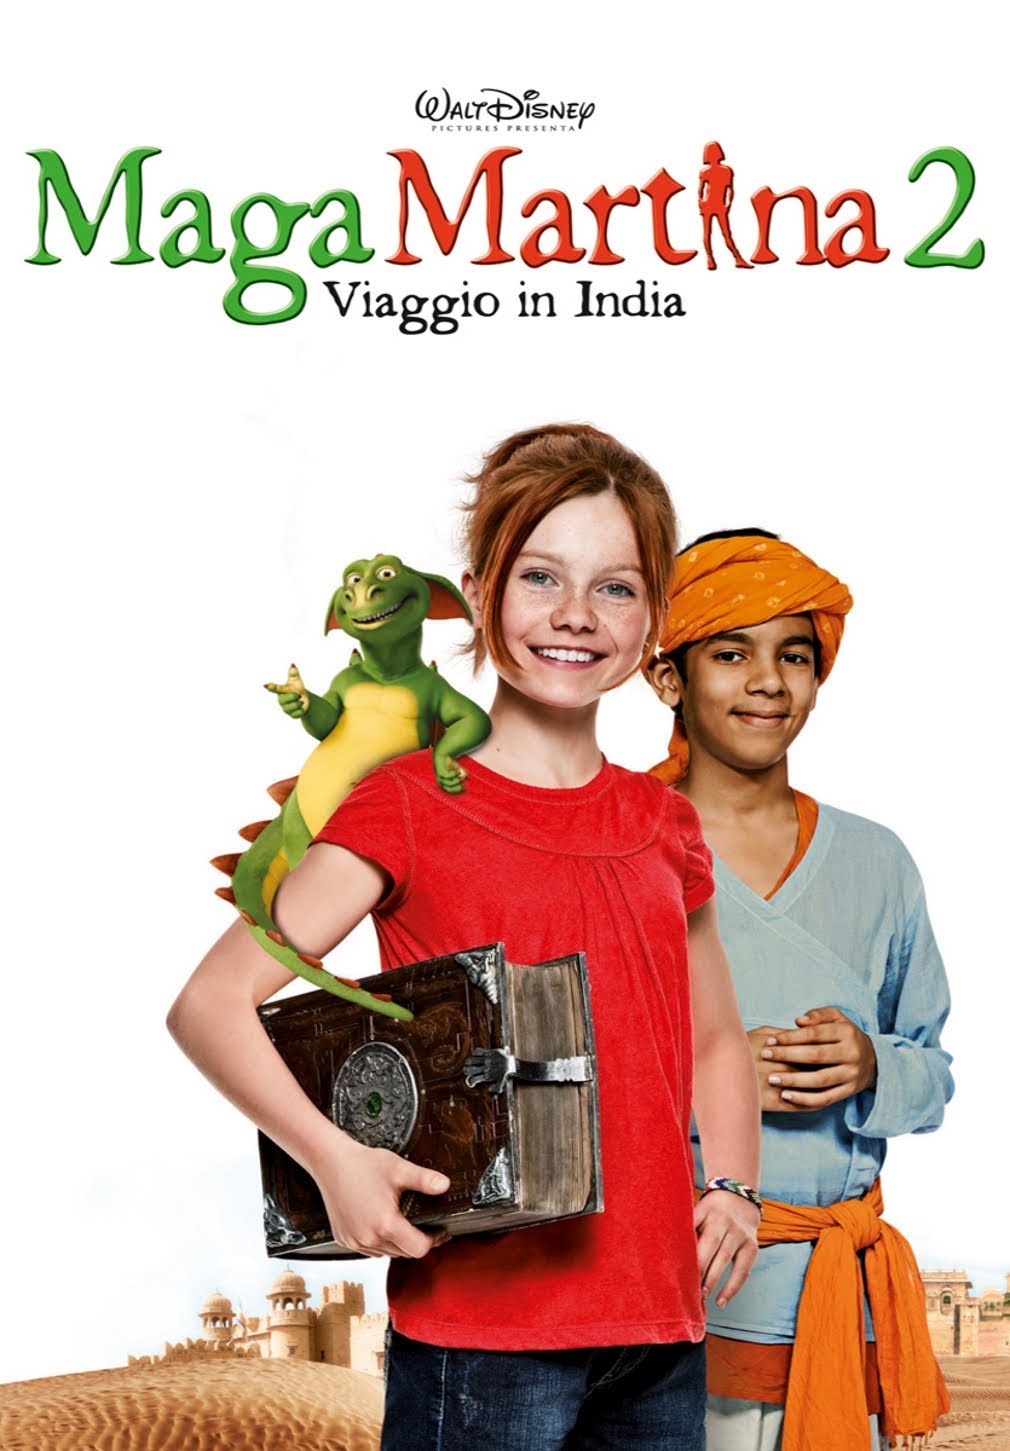 Maga Martina 2 – Viaggio in India (2011)